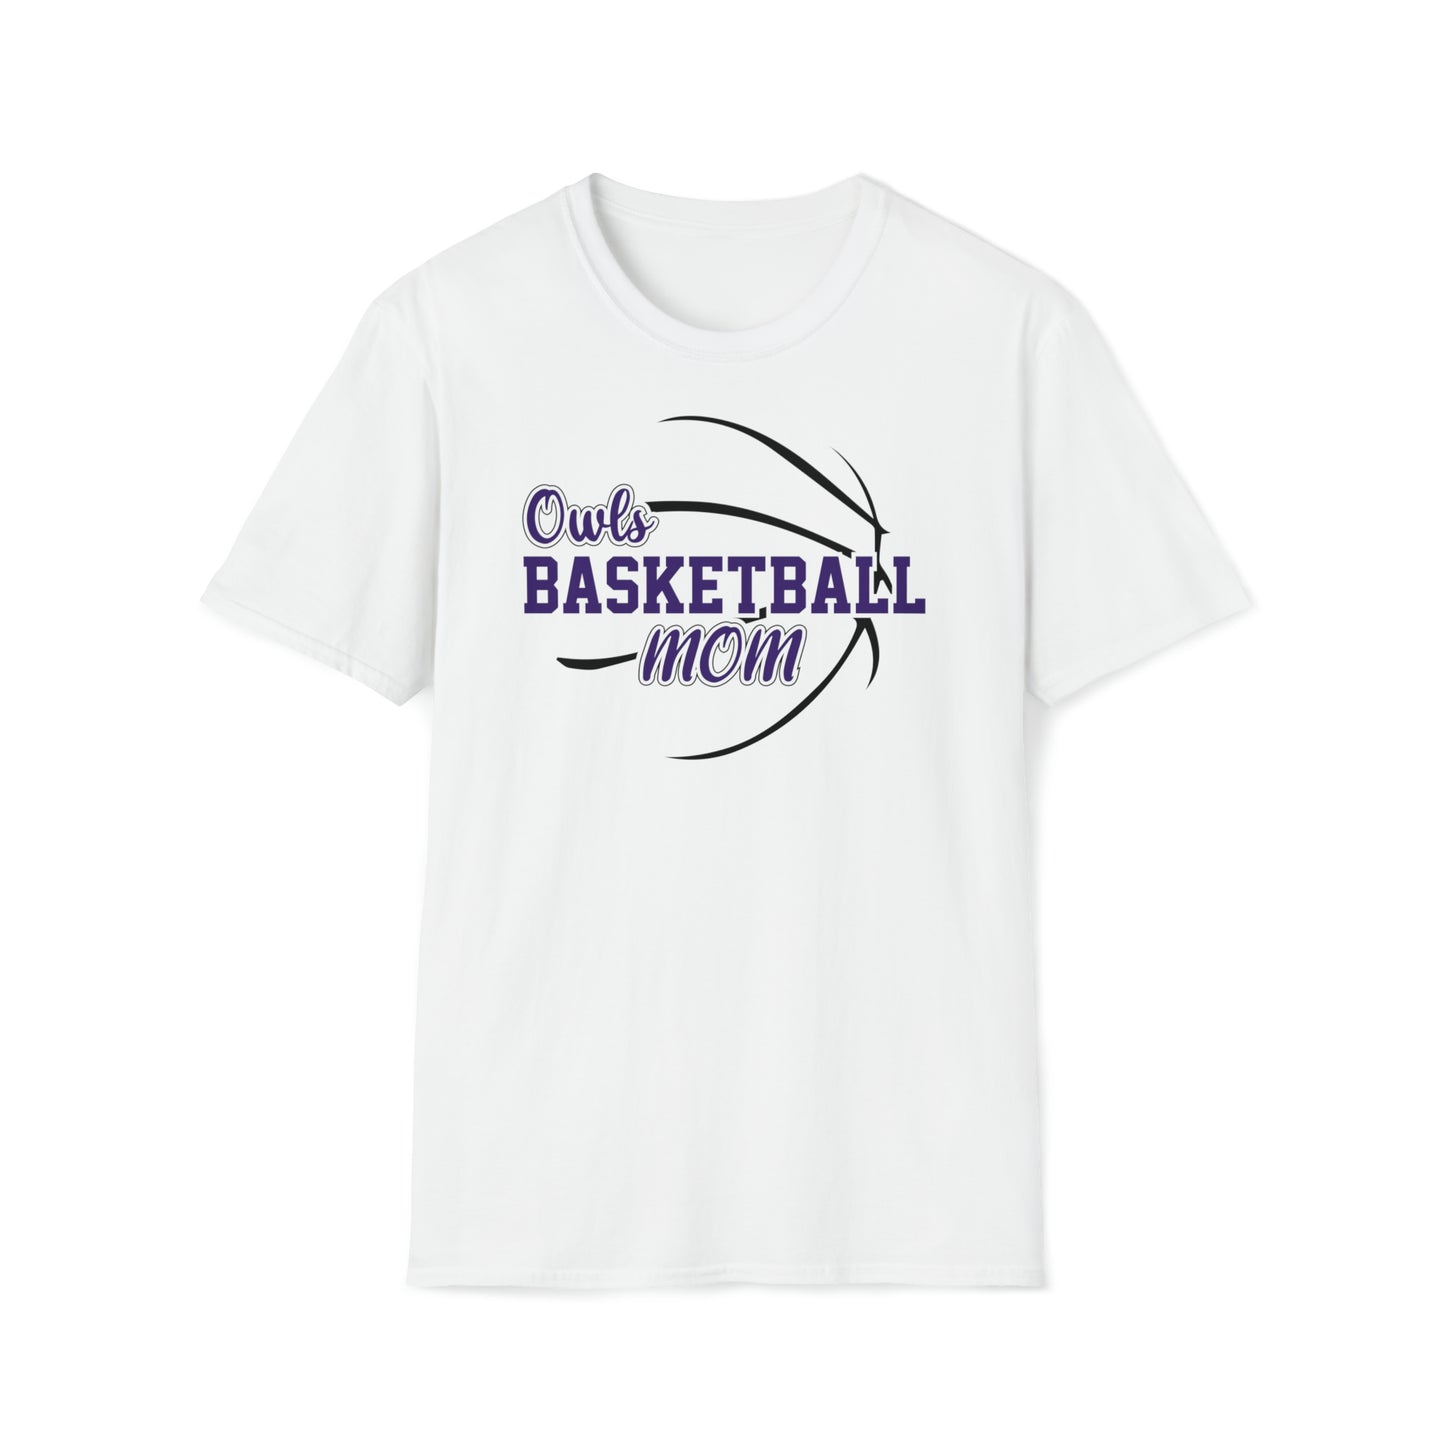 Owls Basketball Mom Unisex Softstyle T-Shirt